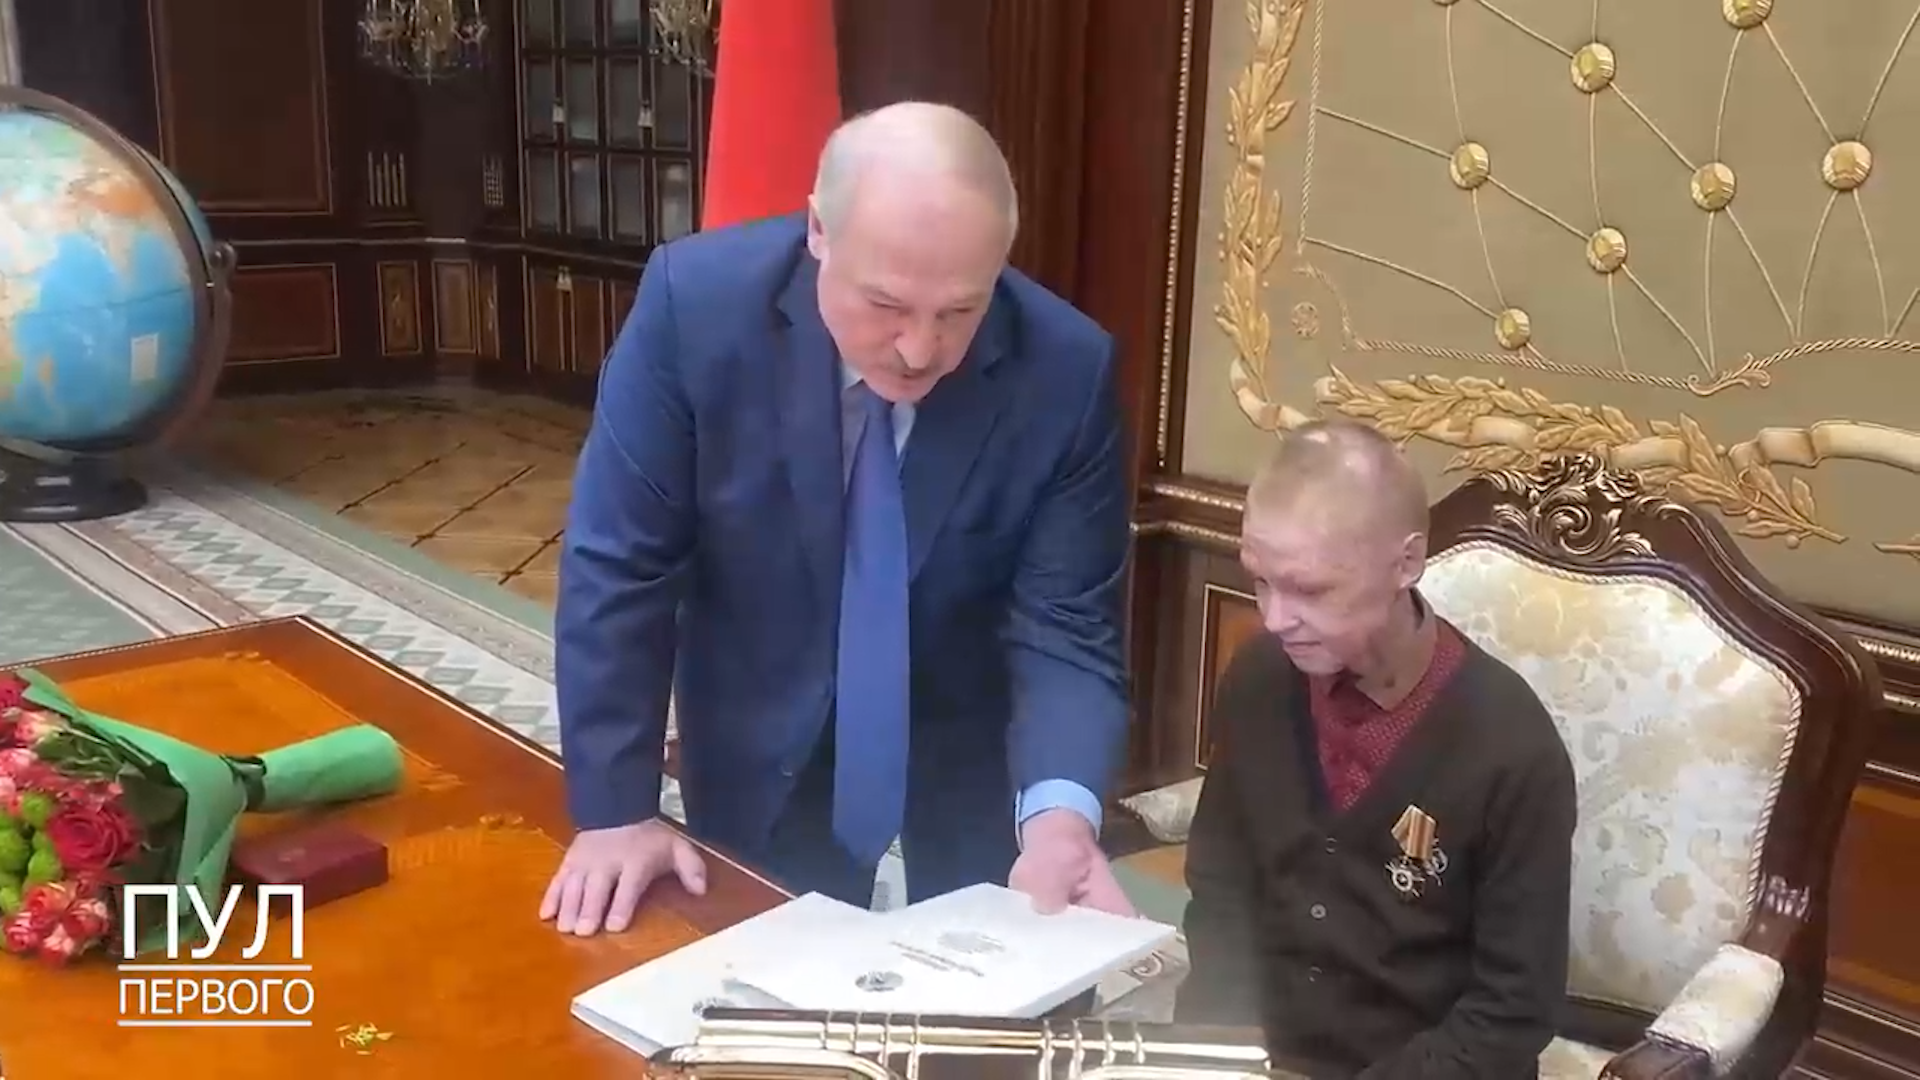 "Вся страна на этом пульте": Лукашенко усадил школьника на свой президентский "трон"